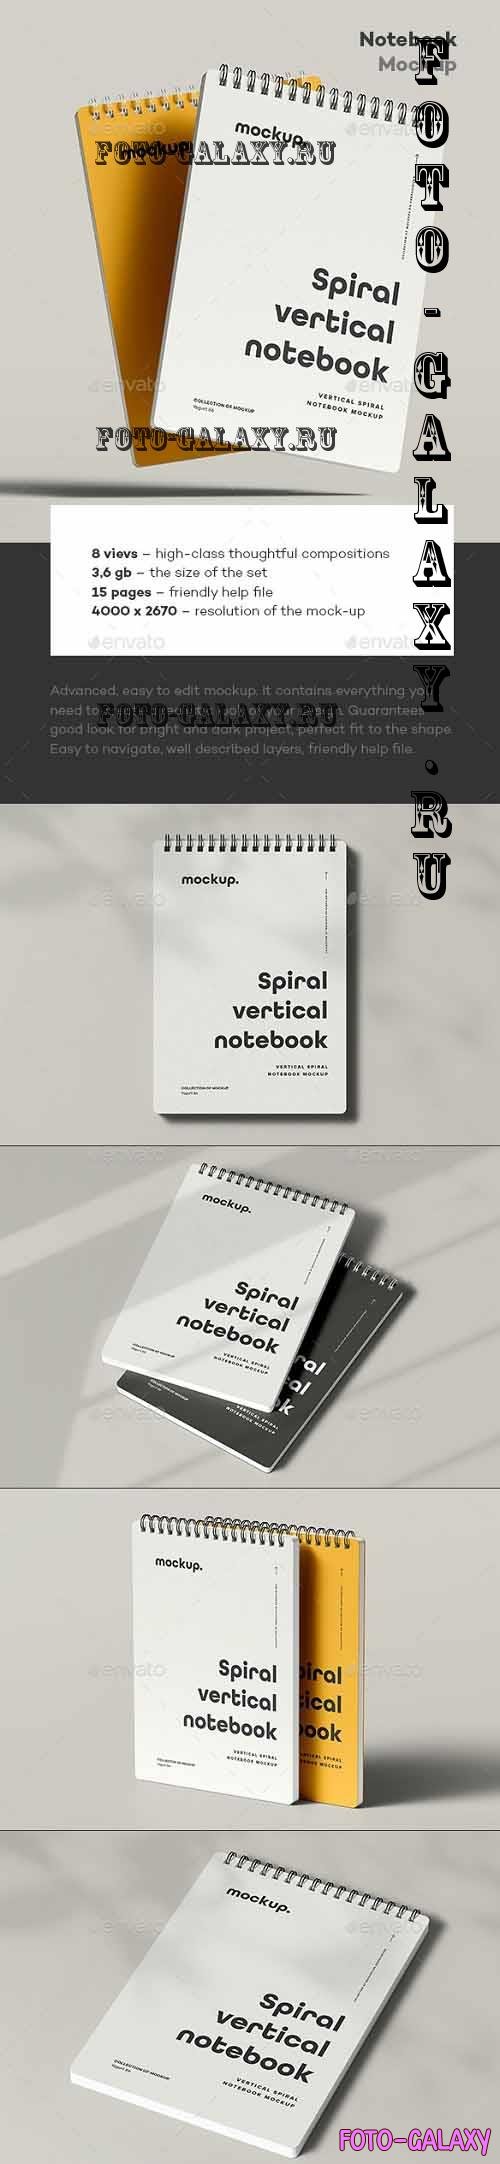 Spiral Notebook Mock-up 2 - 37274564